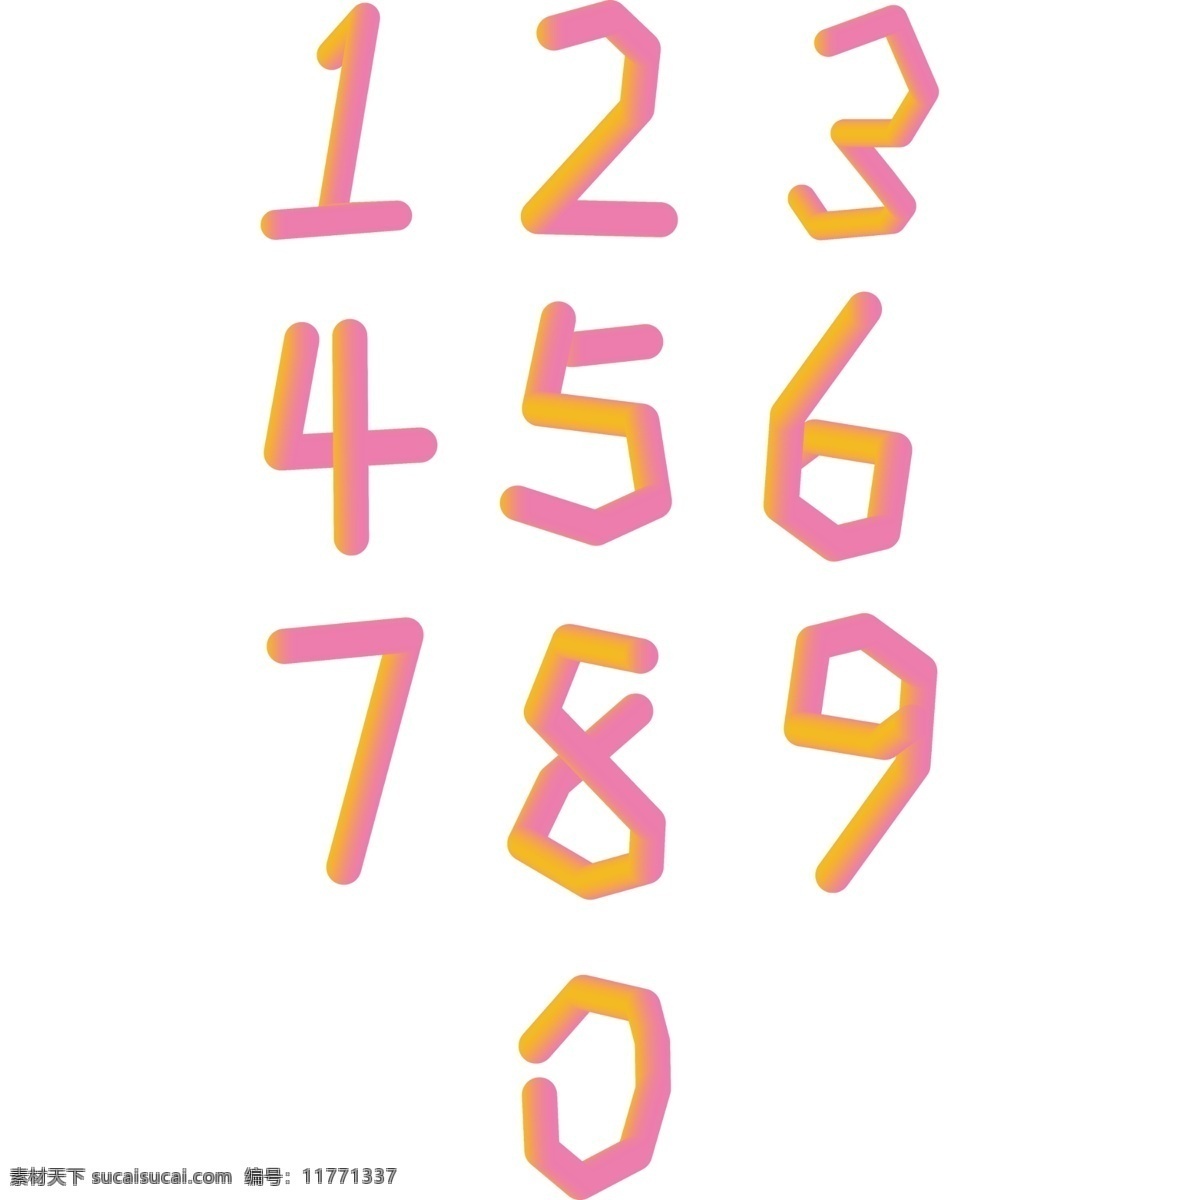 糖果风数字 糖果数字 渐变数字 唯美数字 个性数字 数字素材 数字 数字矢量图